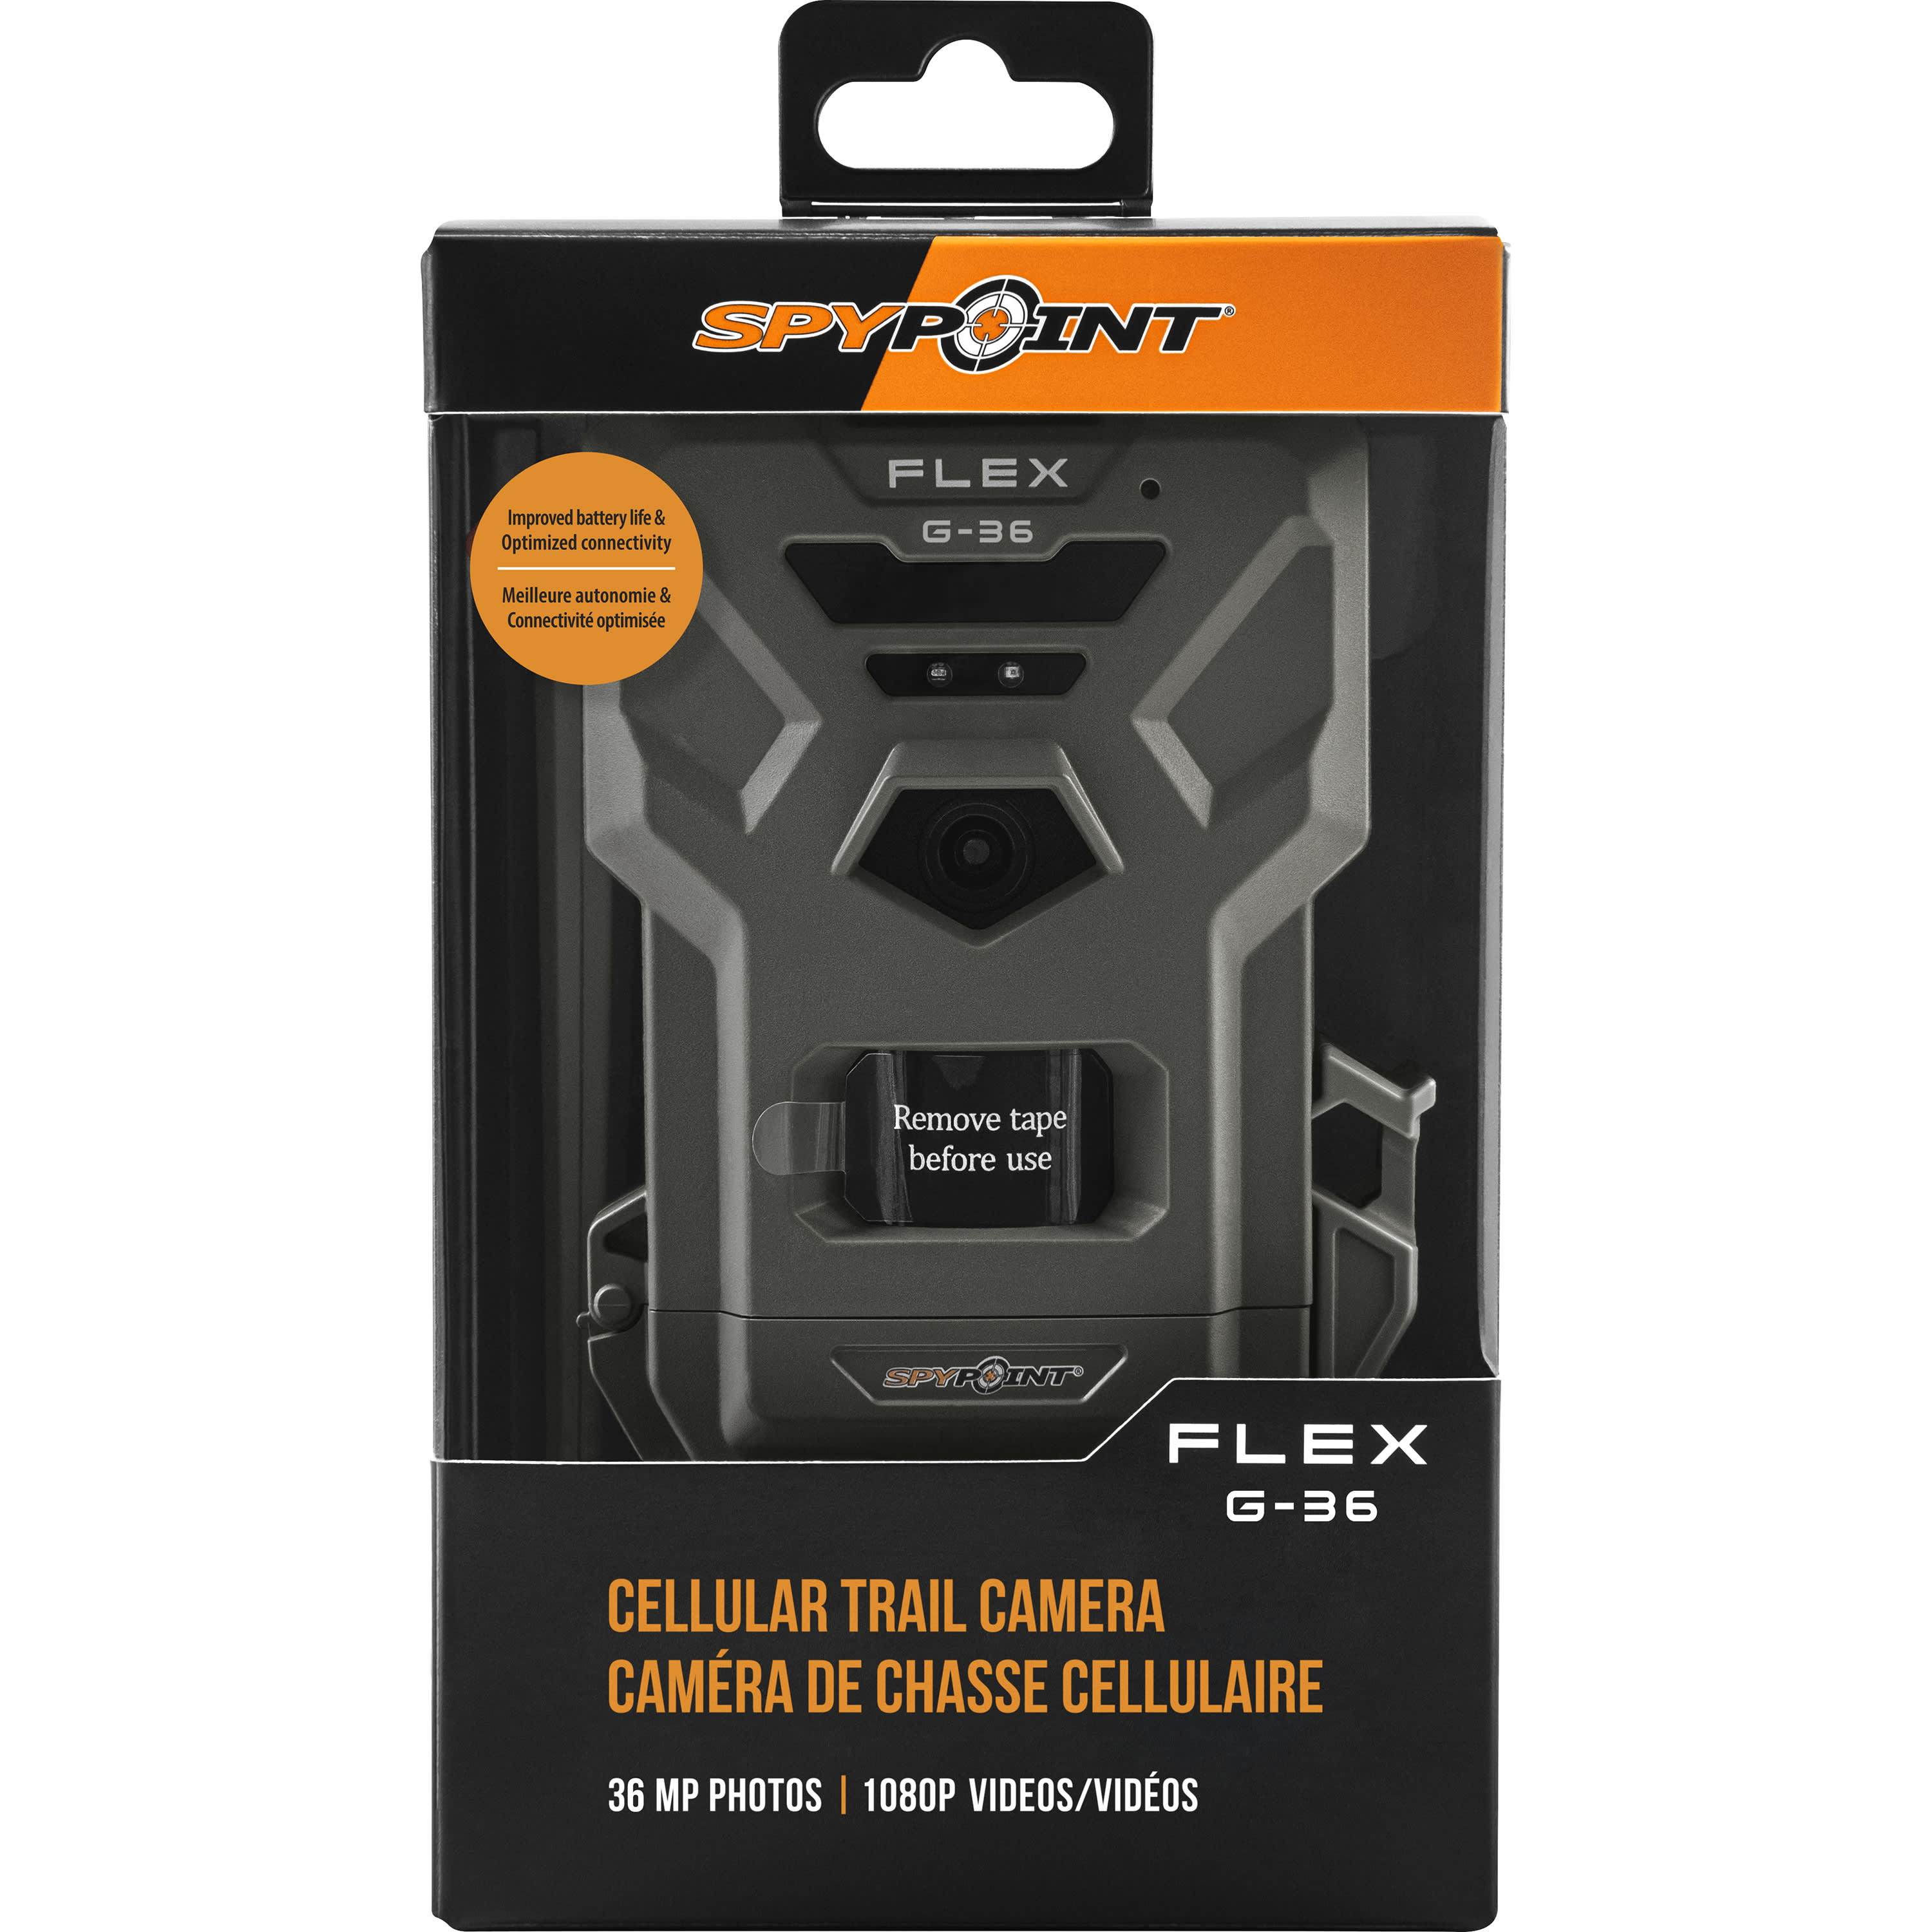 SPYPOINT® FLEX G-36 Cellular Trail Camera